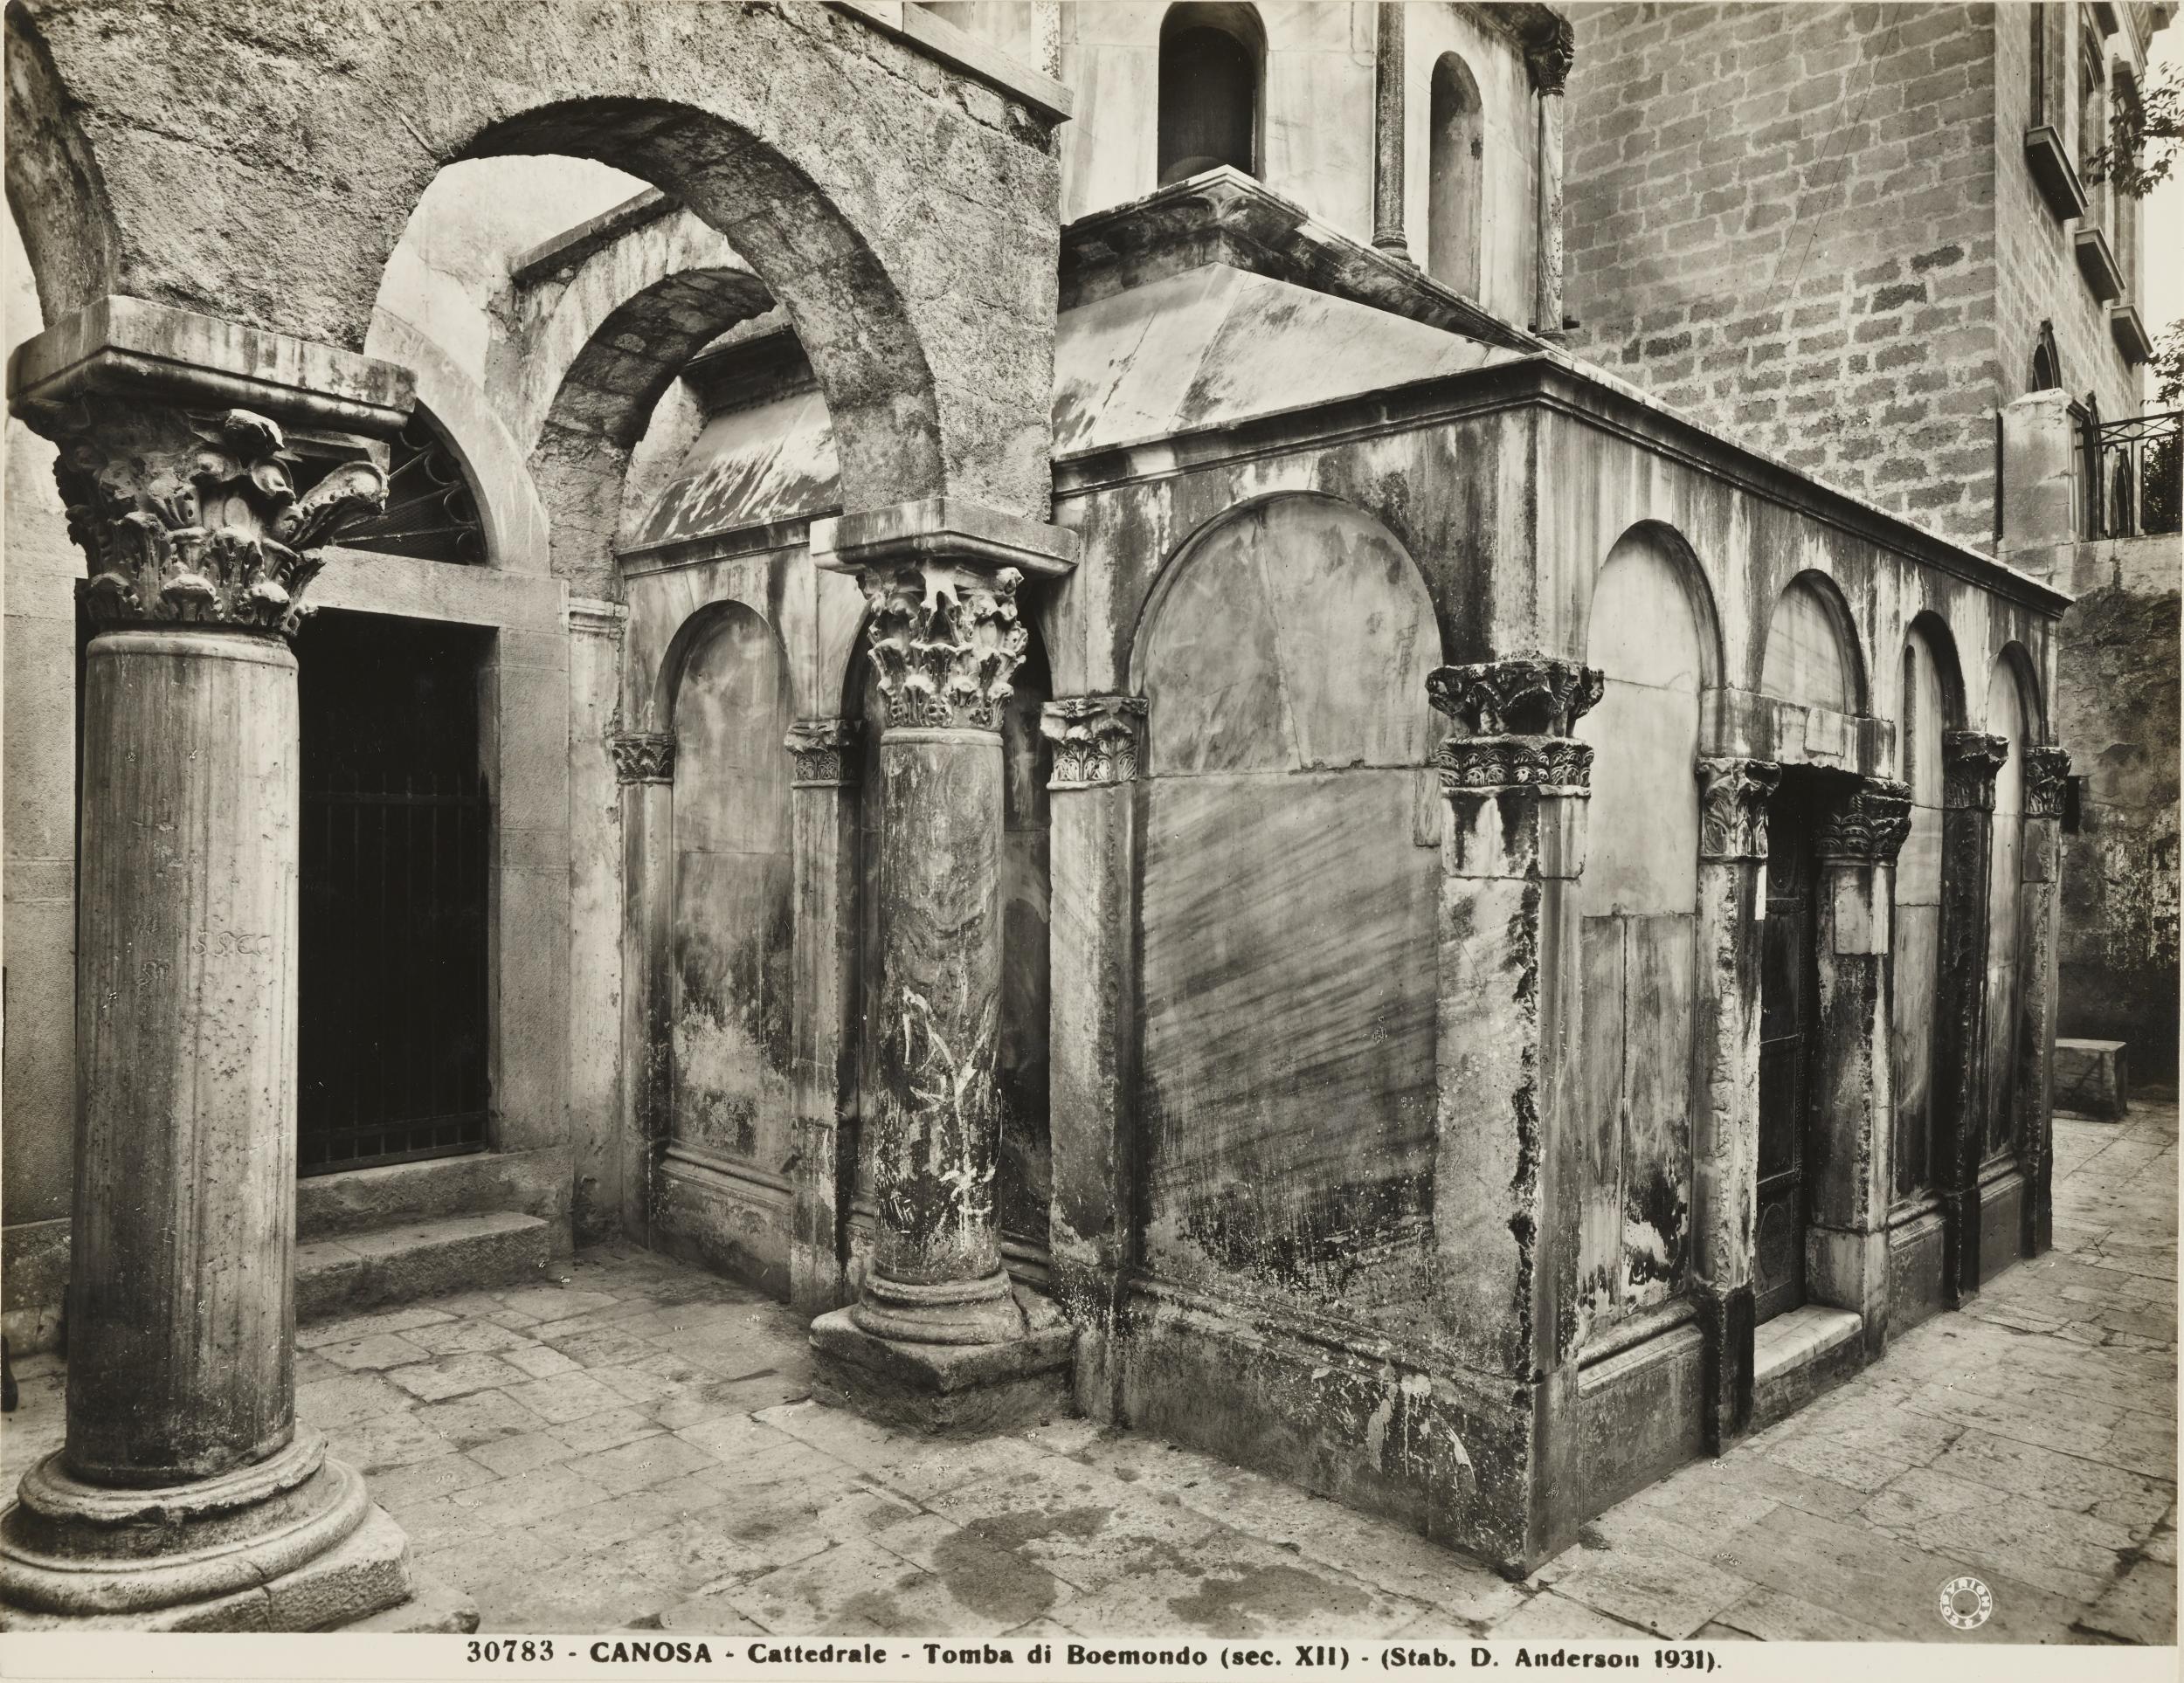 Domenico Anderson, Canosa di Puglia - Chiesa di S. Sabino, tomba di Boemondo, 1931, gelatina ai sali d'argento/carta, MPI143594